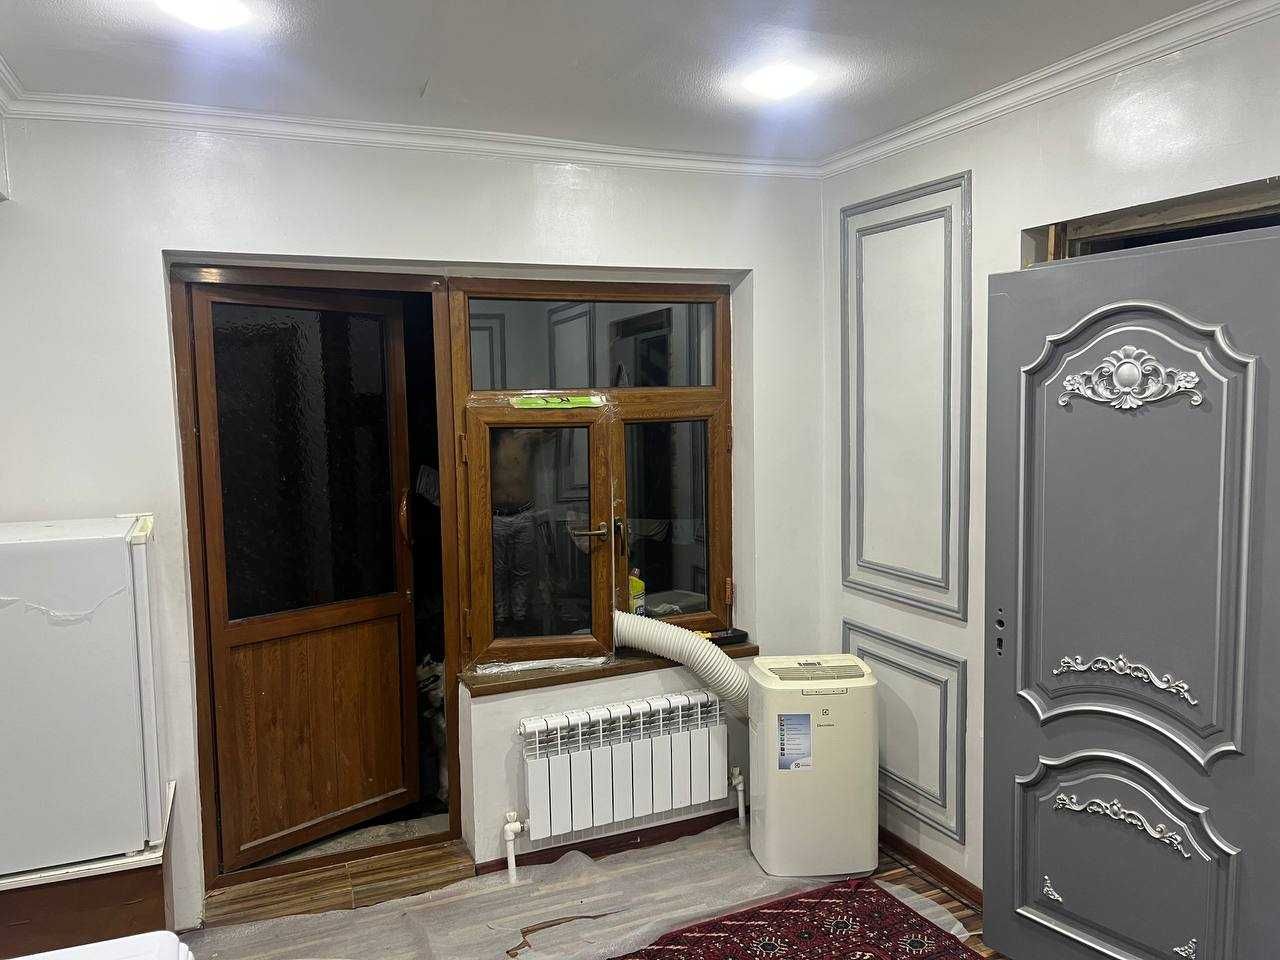 Аренда 3 комнатный дом на Циалковском со всеми условиями